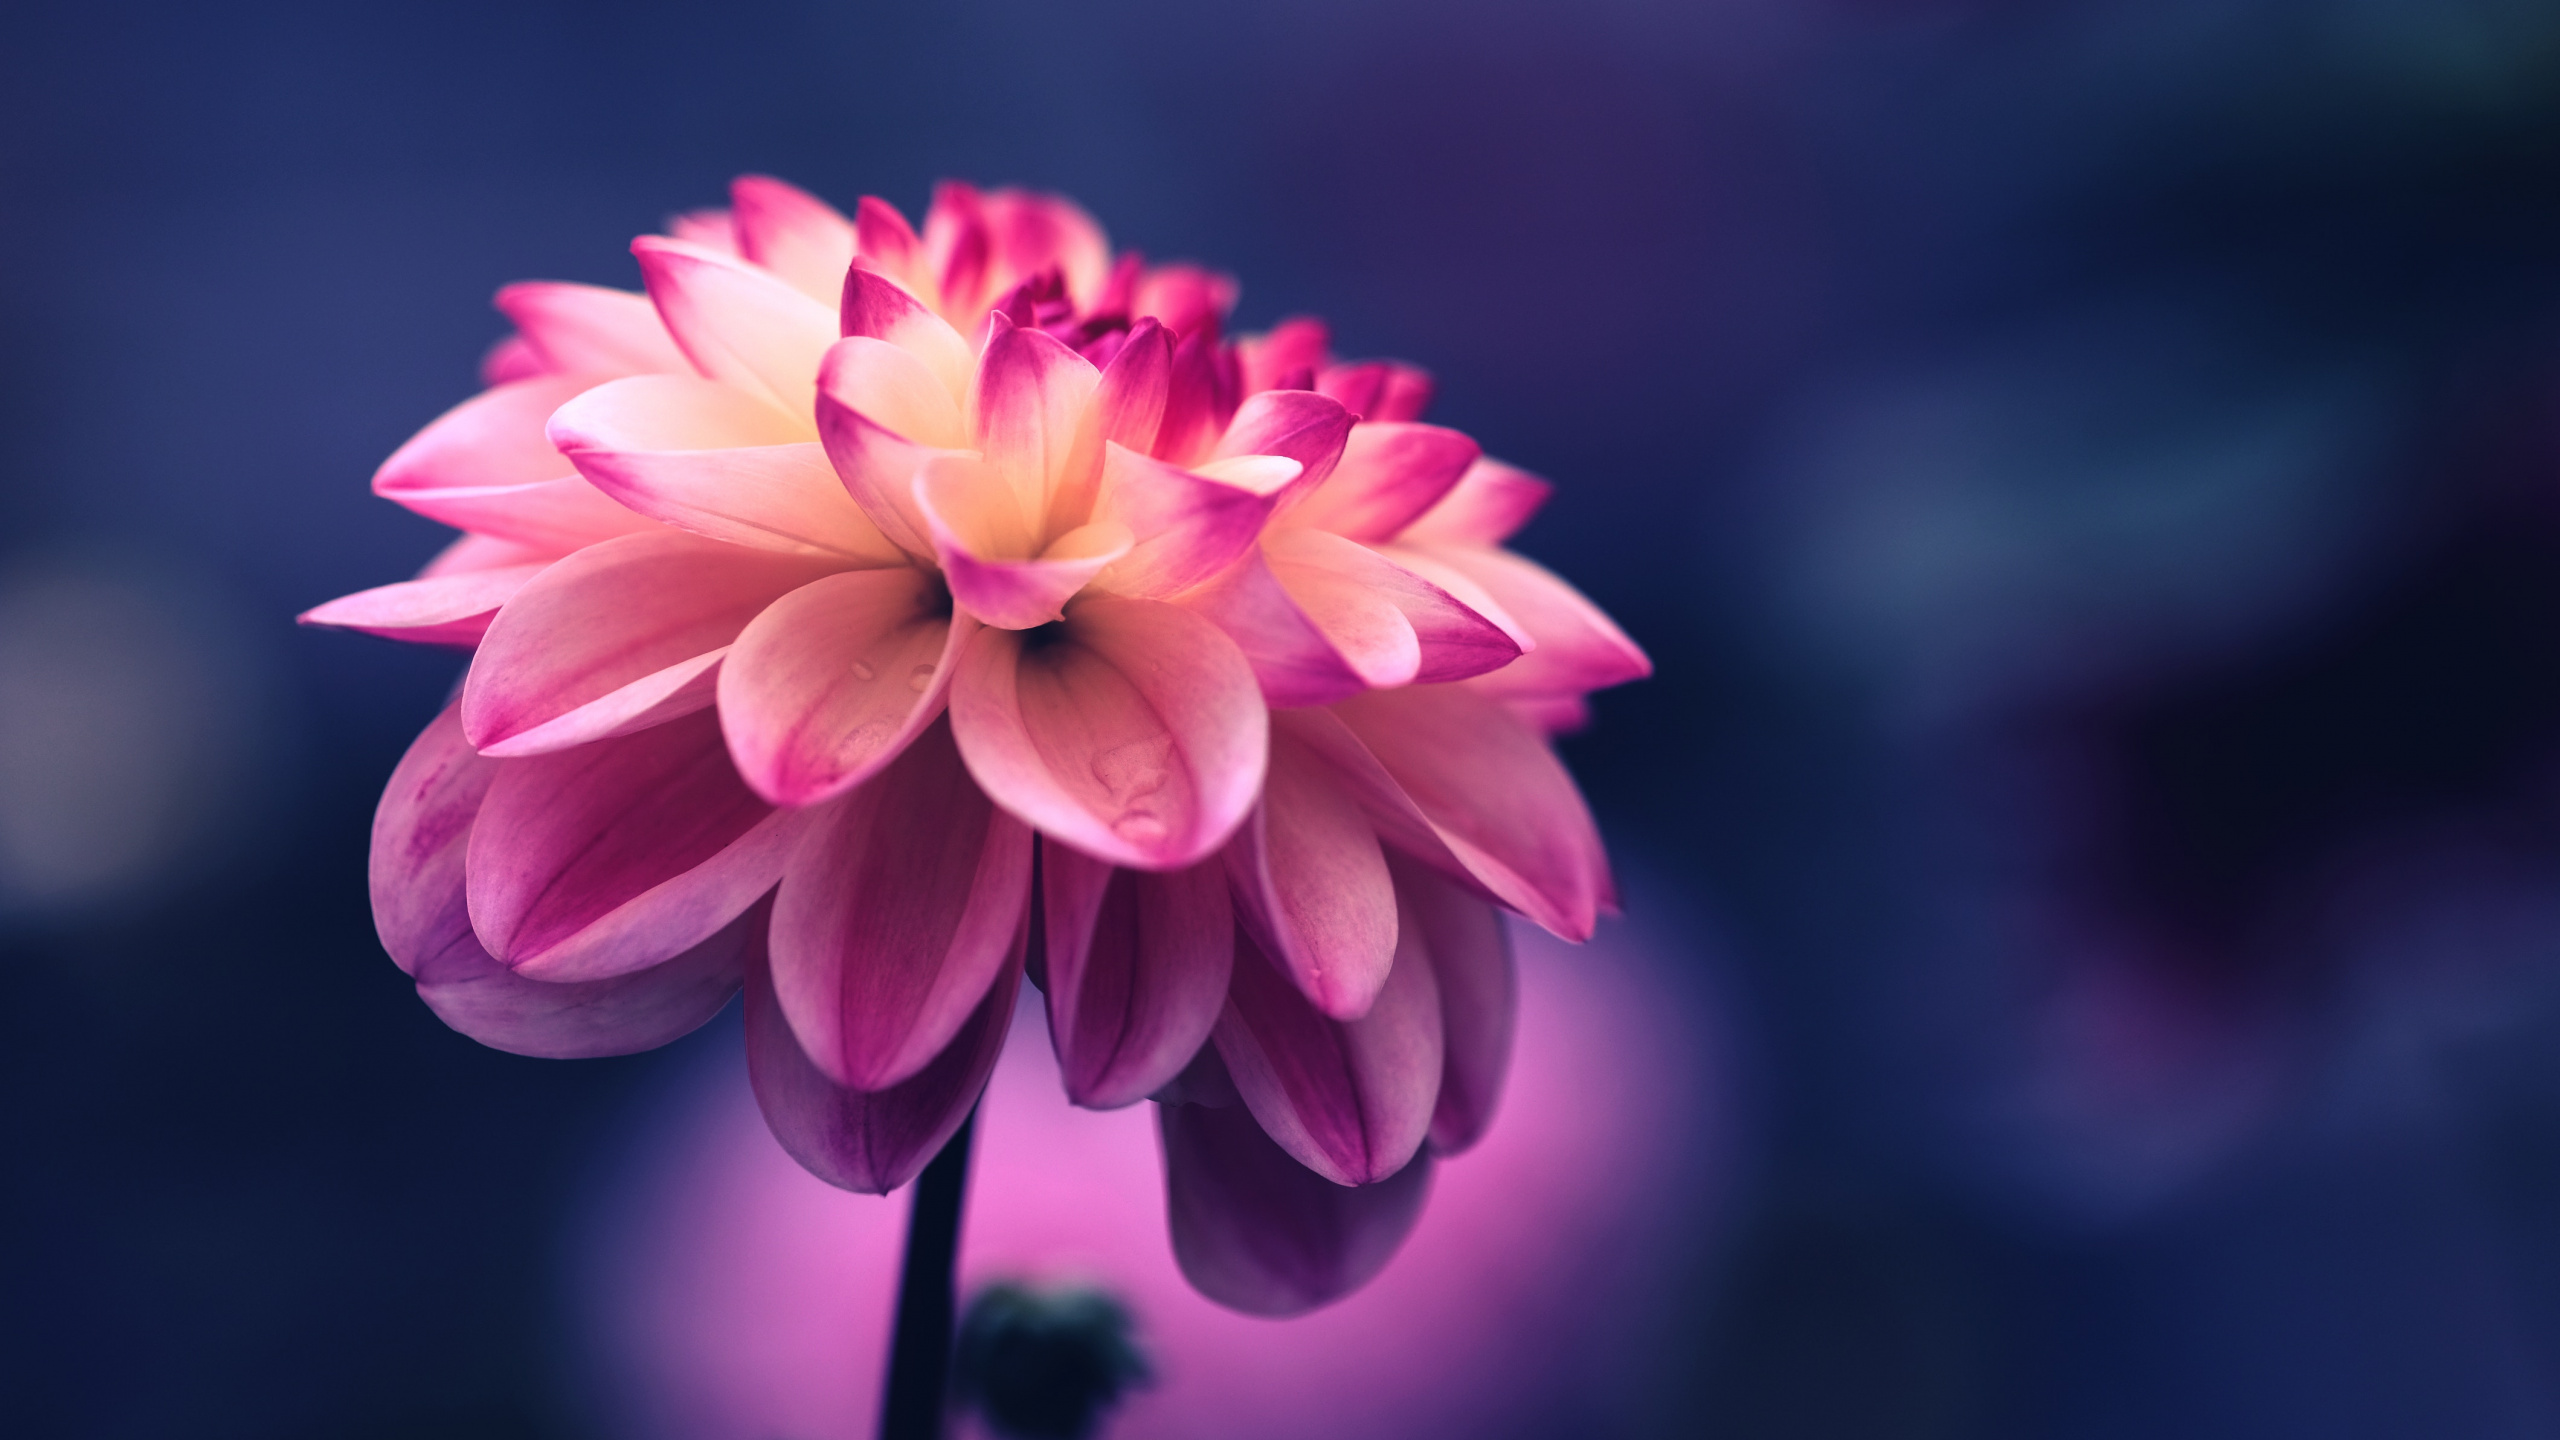 Pink, Seide, Regenbogen Stieg Auf, Blütenblatt, Blühende Pflanze. Wallpaper in 2560x1440 Resolution